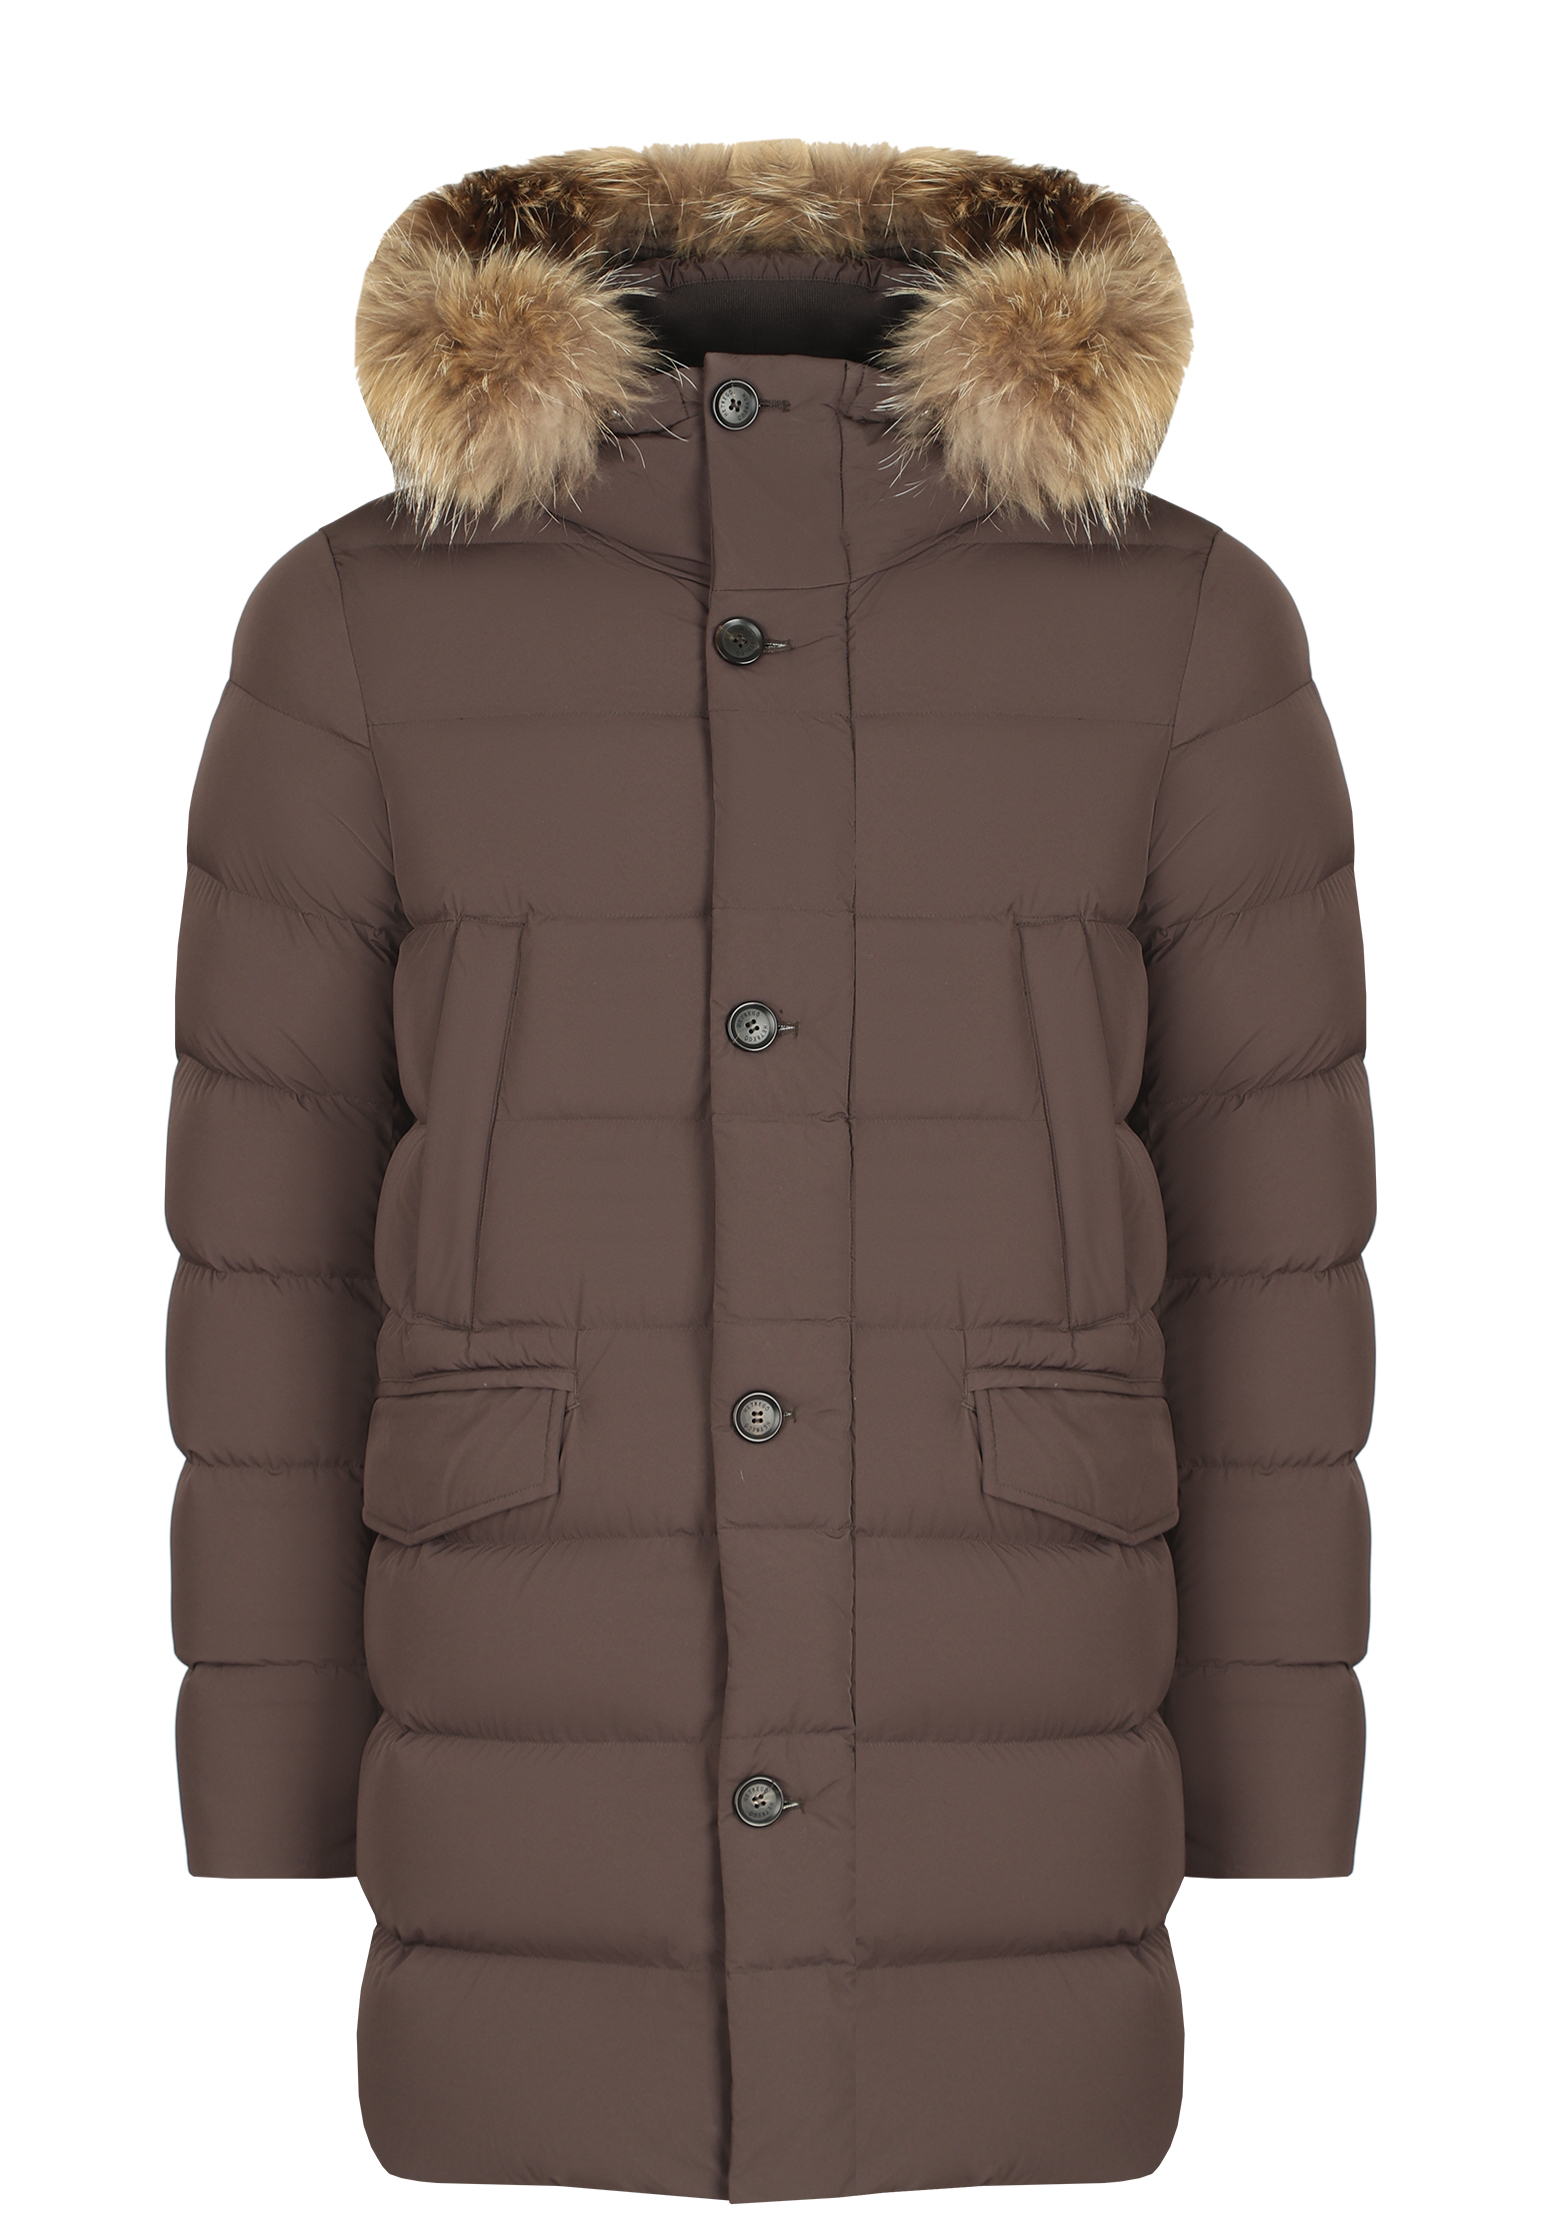 Куртка мужская HETREGO 145159 коричневая 50